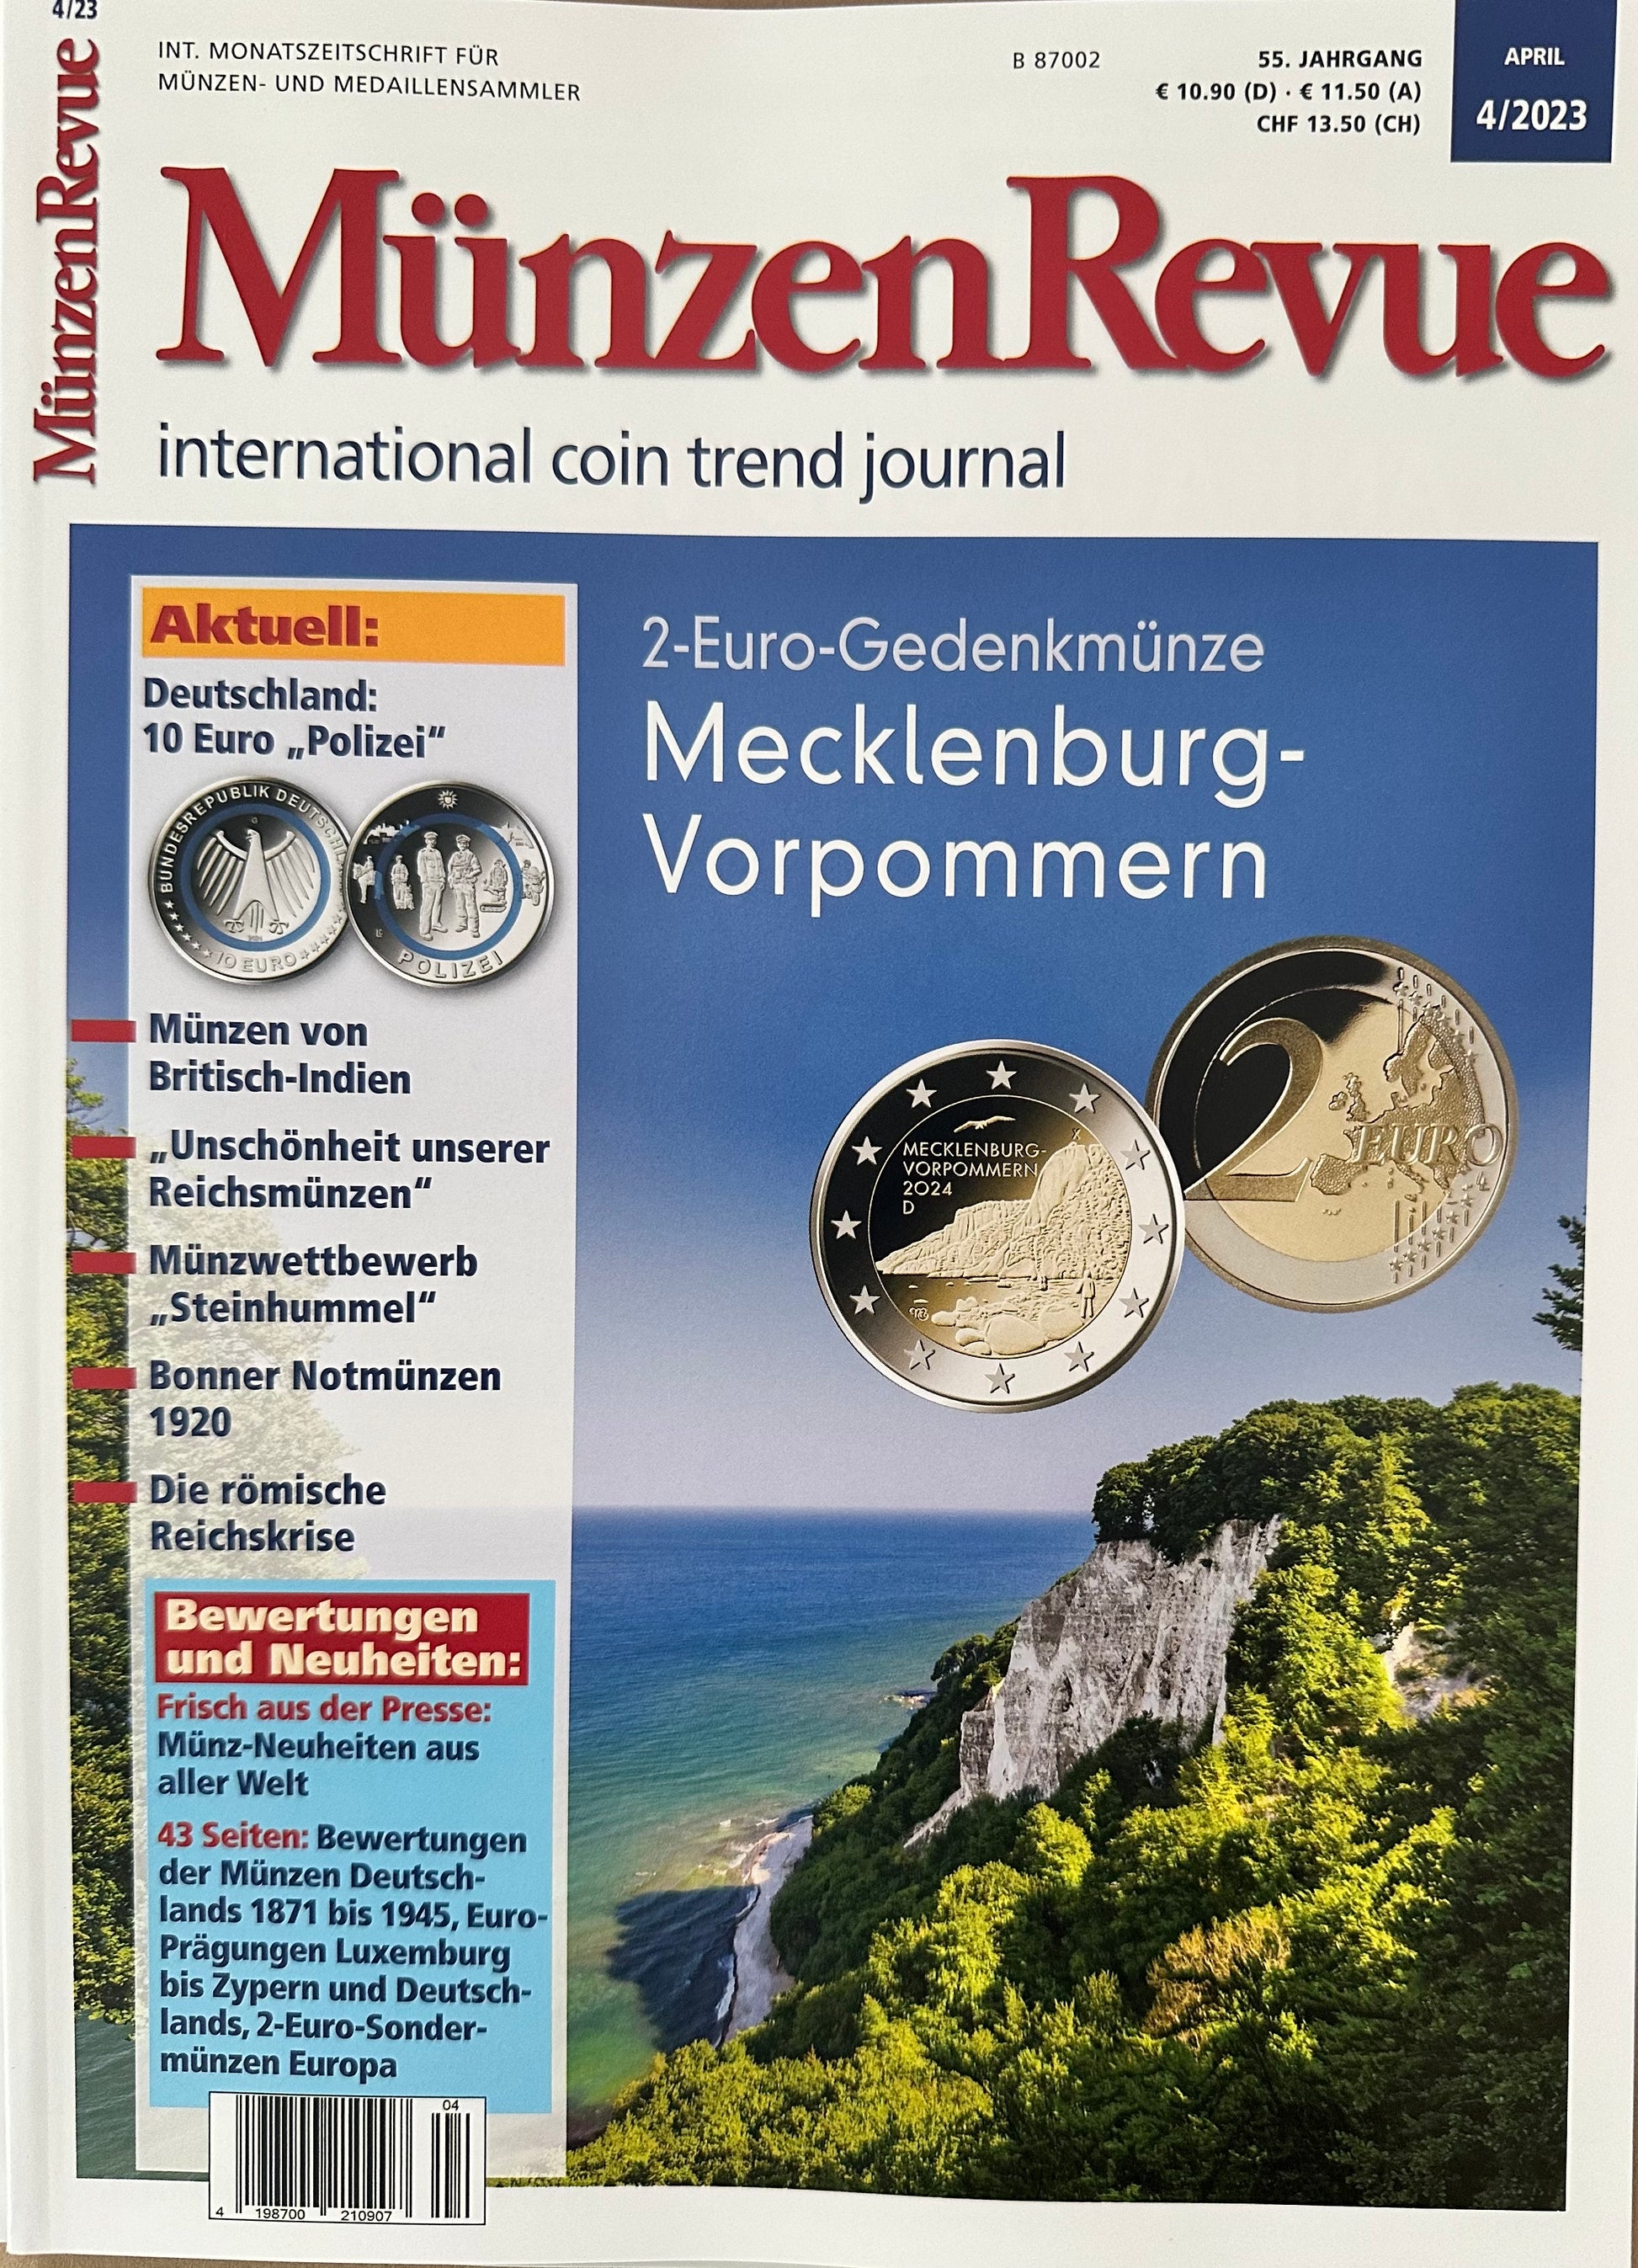 Münzen Revue Ausgabe 2023 auch als Jahresabo hier erhältlich - Le Grand Mint